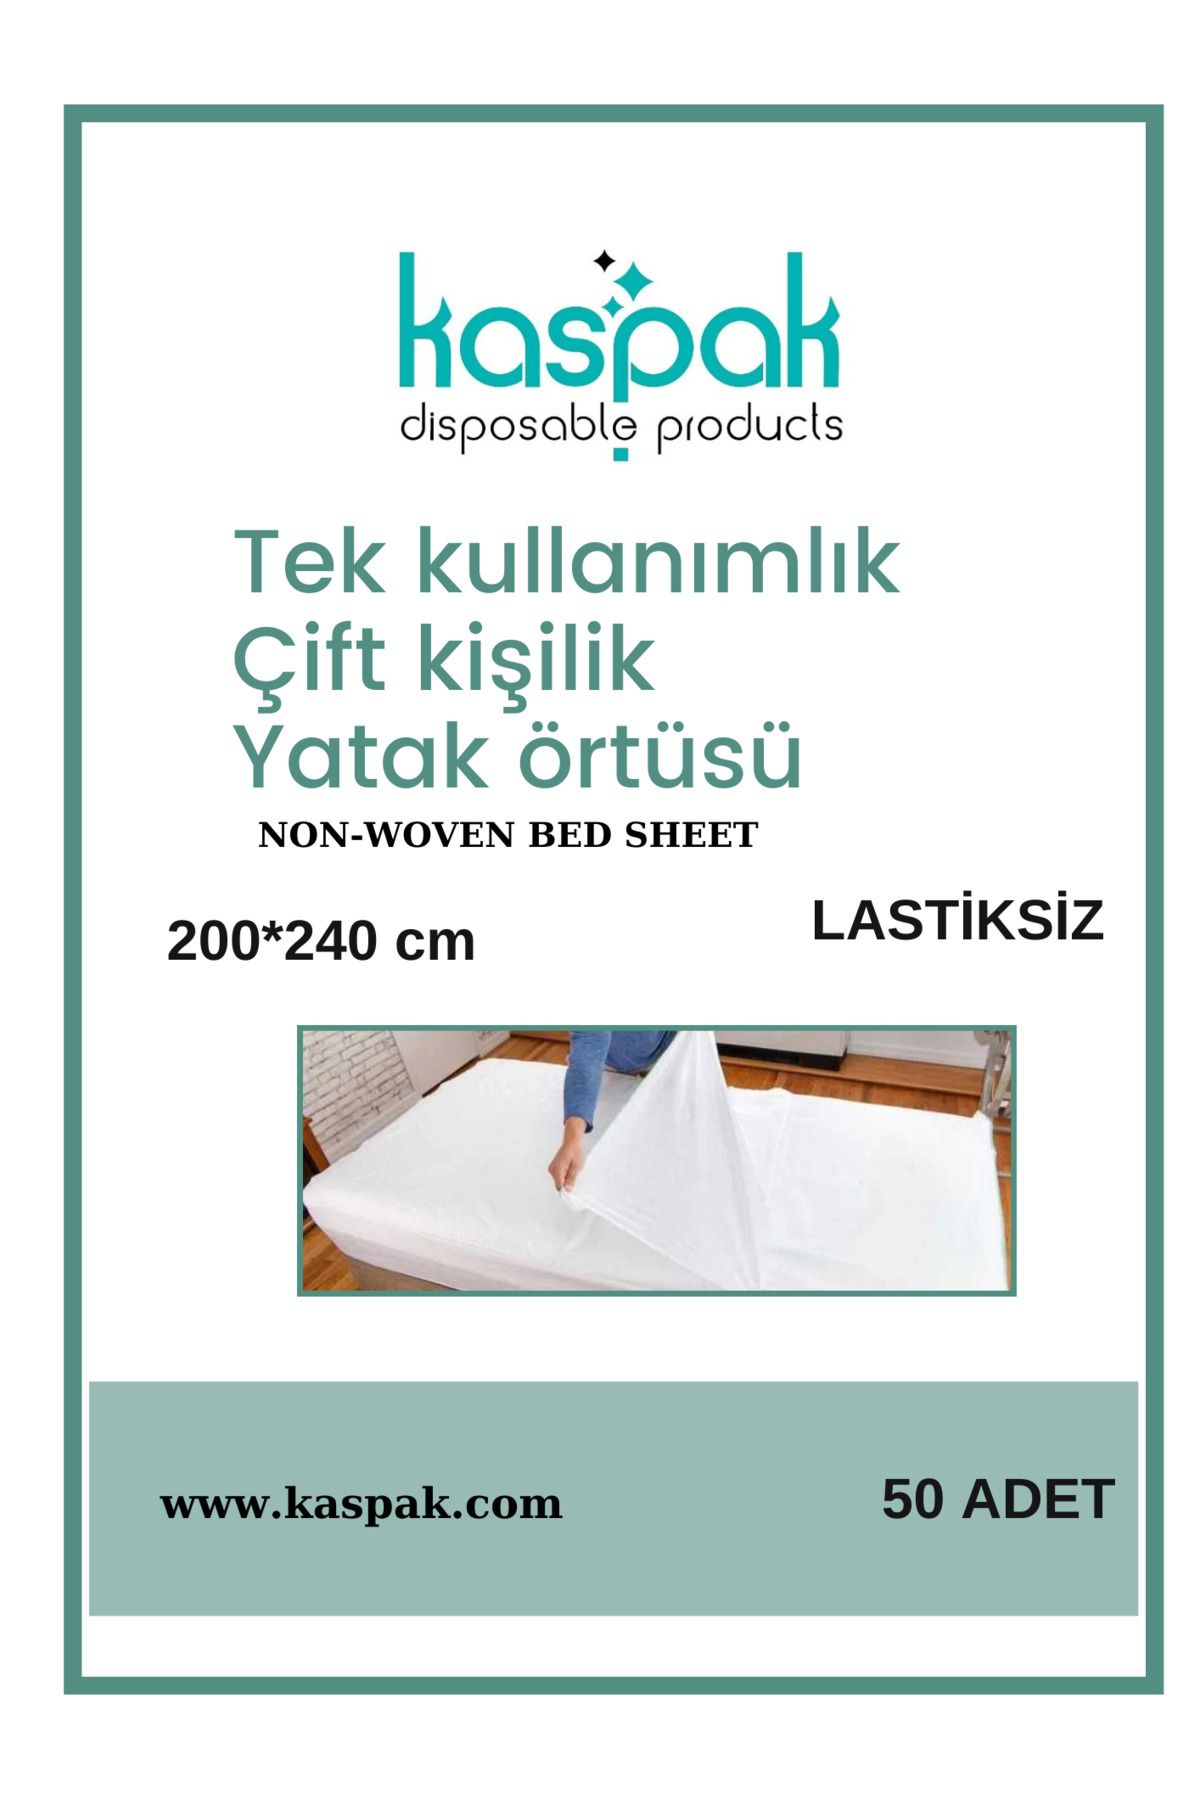 Kaspak disposable products Tek kullanımlık yatak örtüsü çift kişilik lastiksiz 200*240cm 50 adet